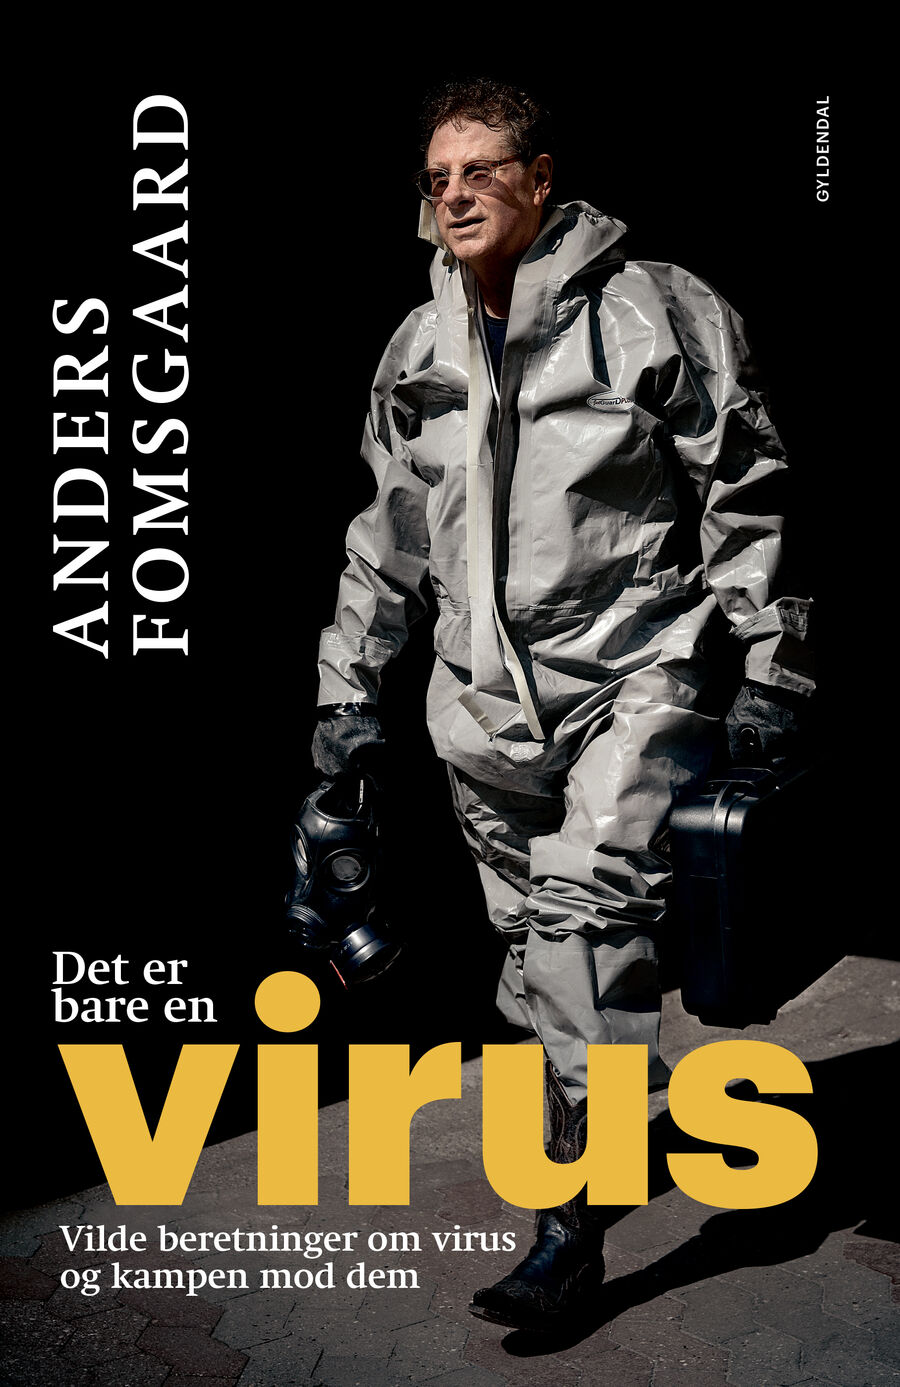 Forsiden af bogen "Det er bare en virus": forsker Anders Fomsgaard i beskyttelsesdragt.